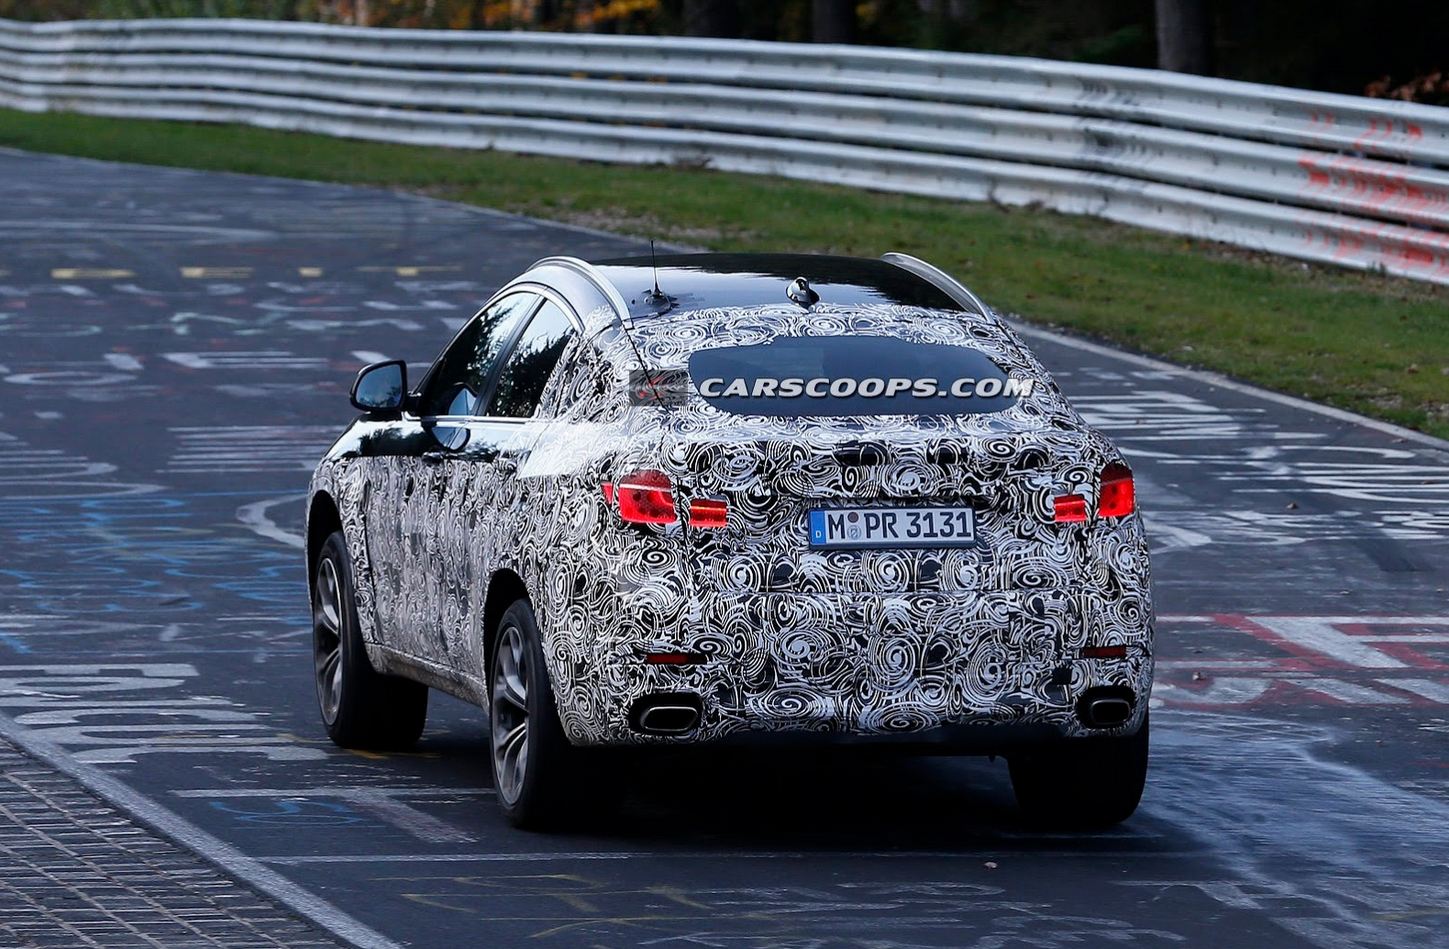 2015 BMW X6 spied